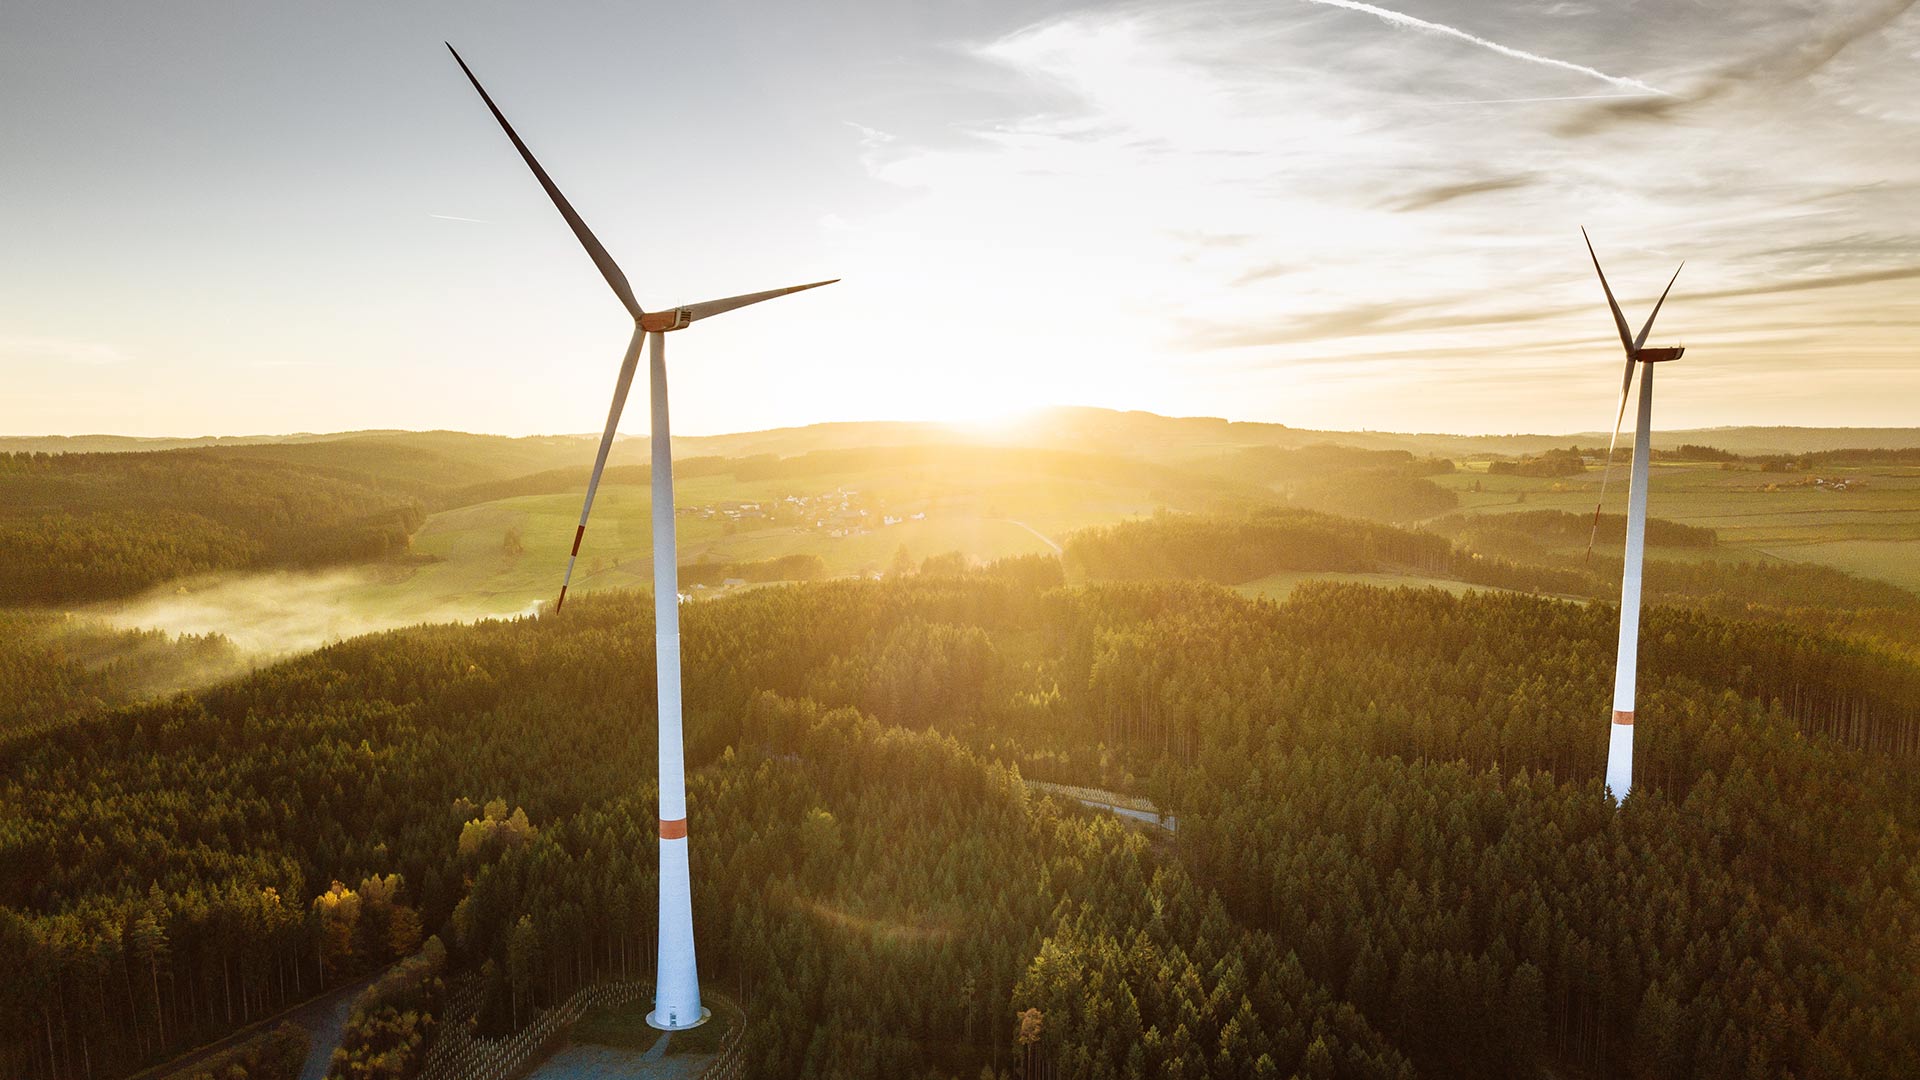 Ausbau der erneuerbaren stockt: Windkraftanlage vor Sonnenuntergang